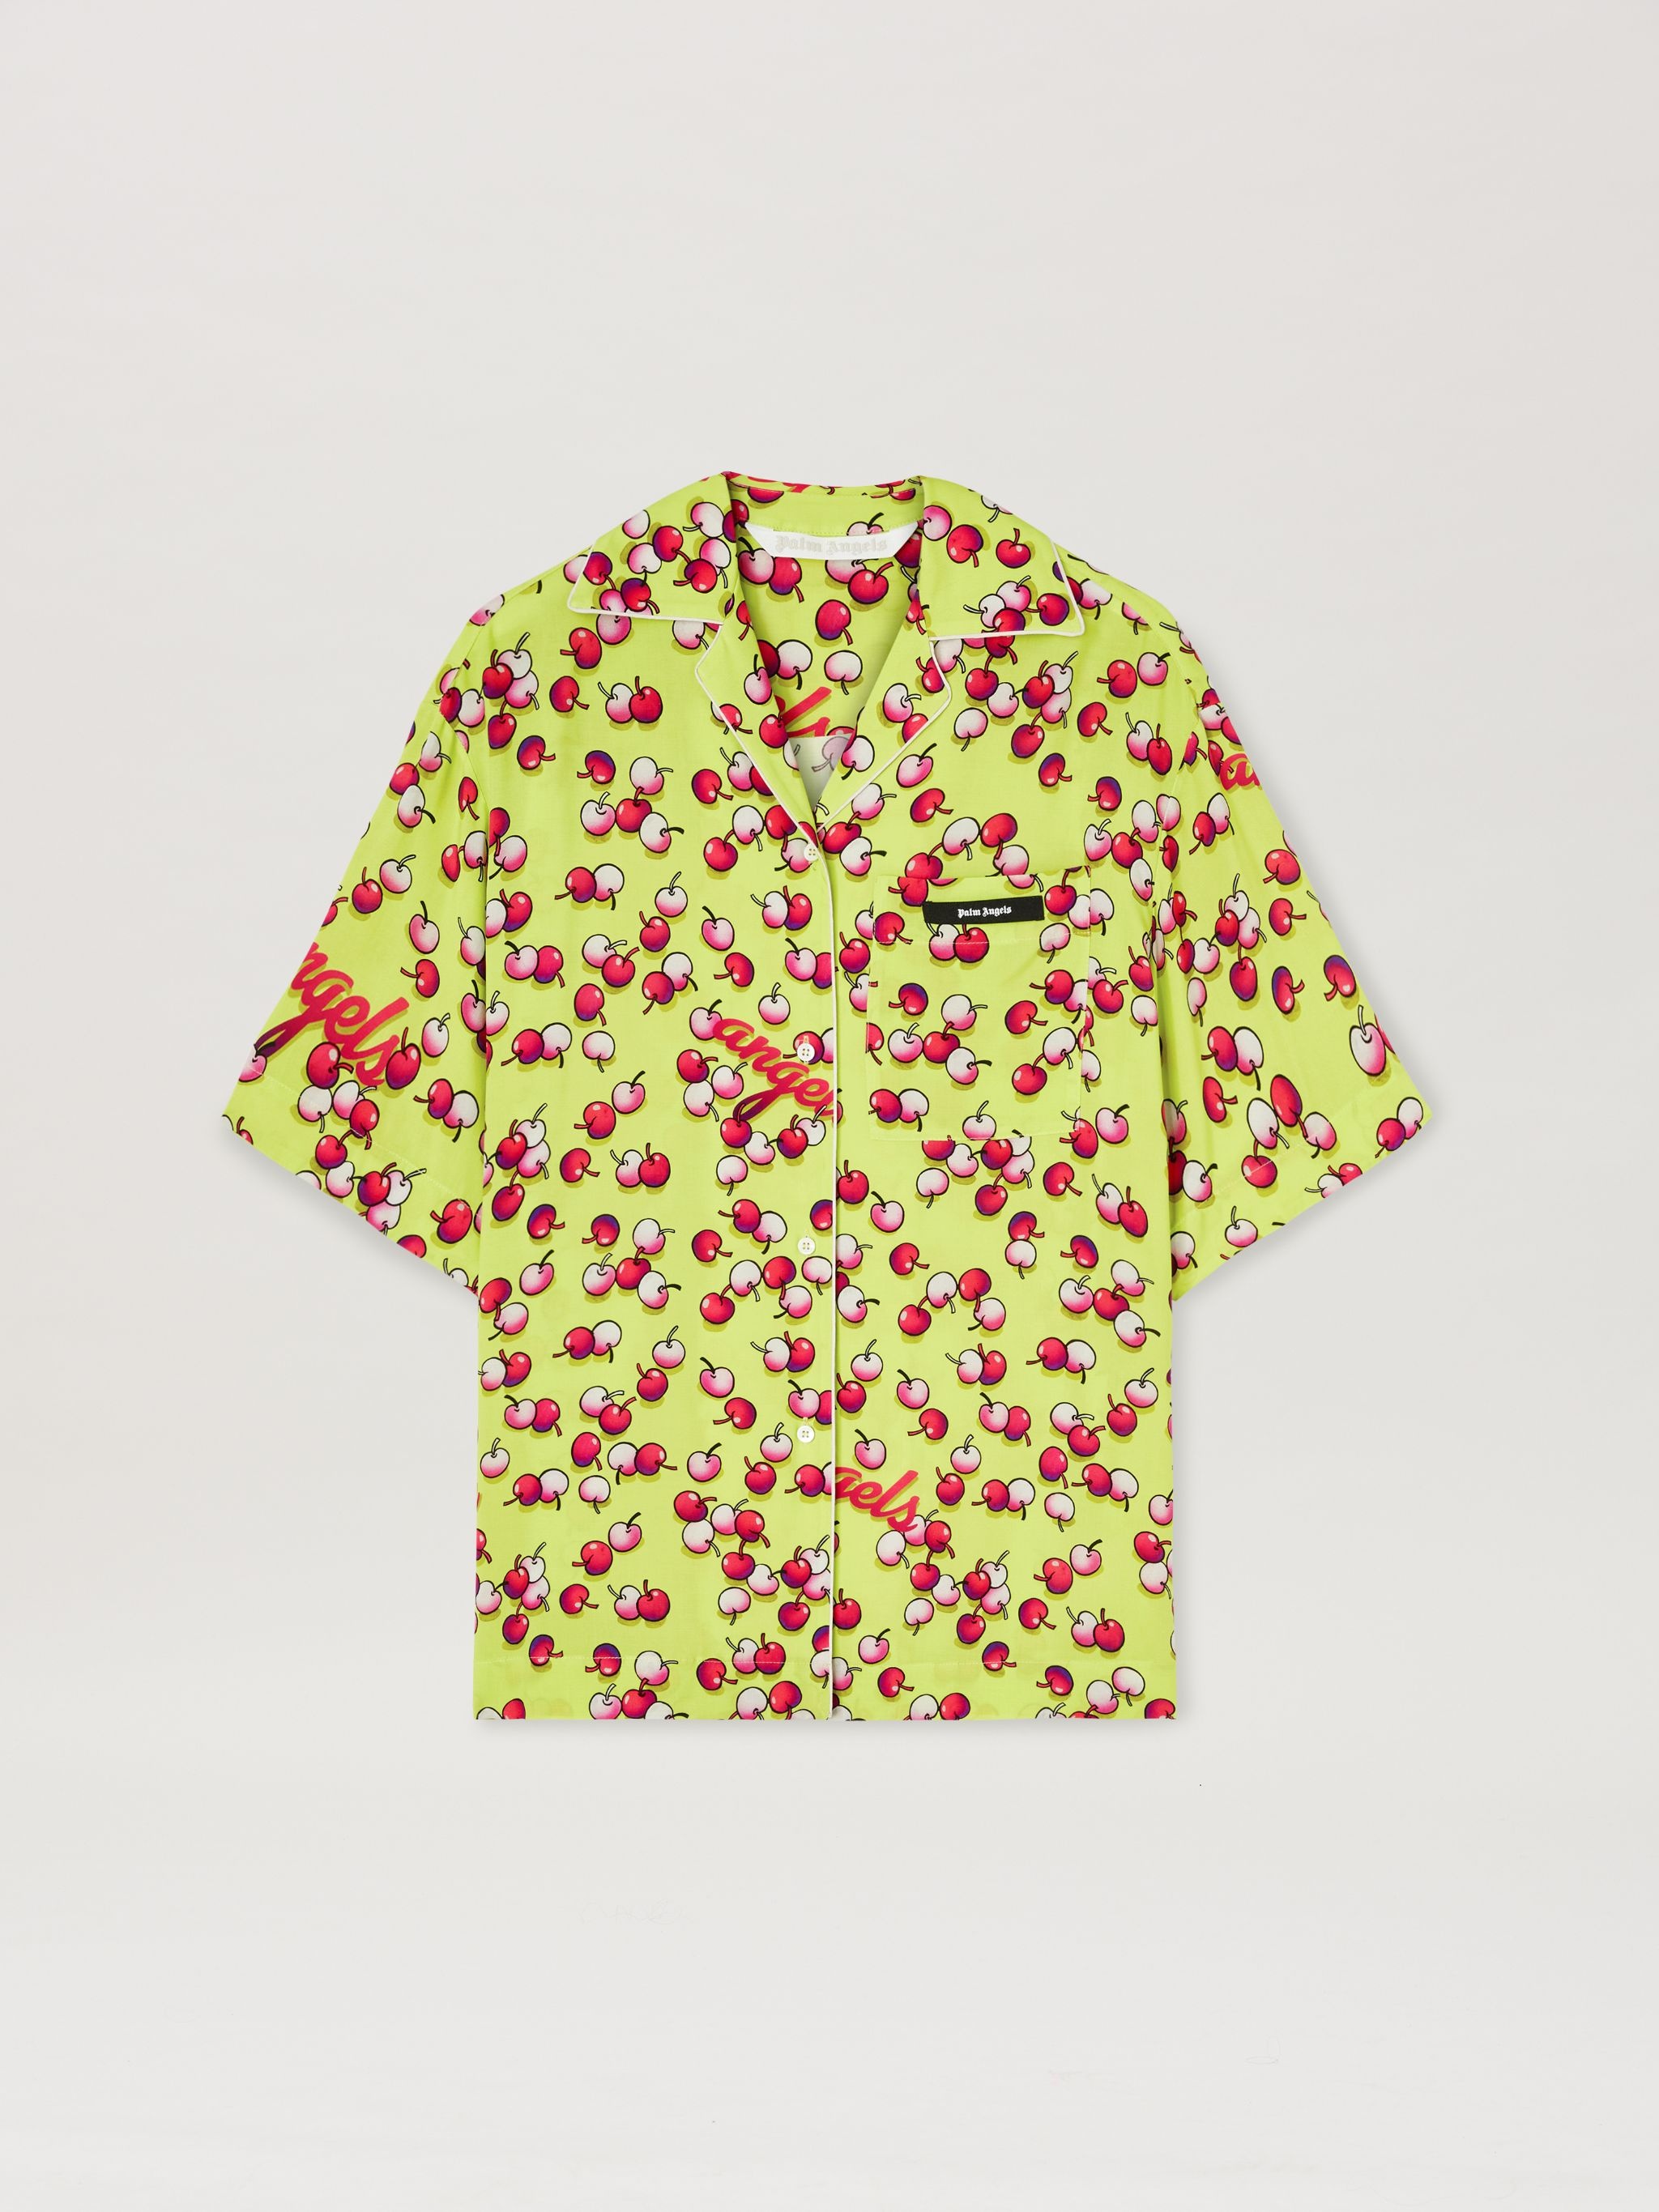 Cherries shirt - 1